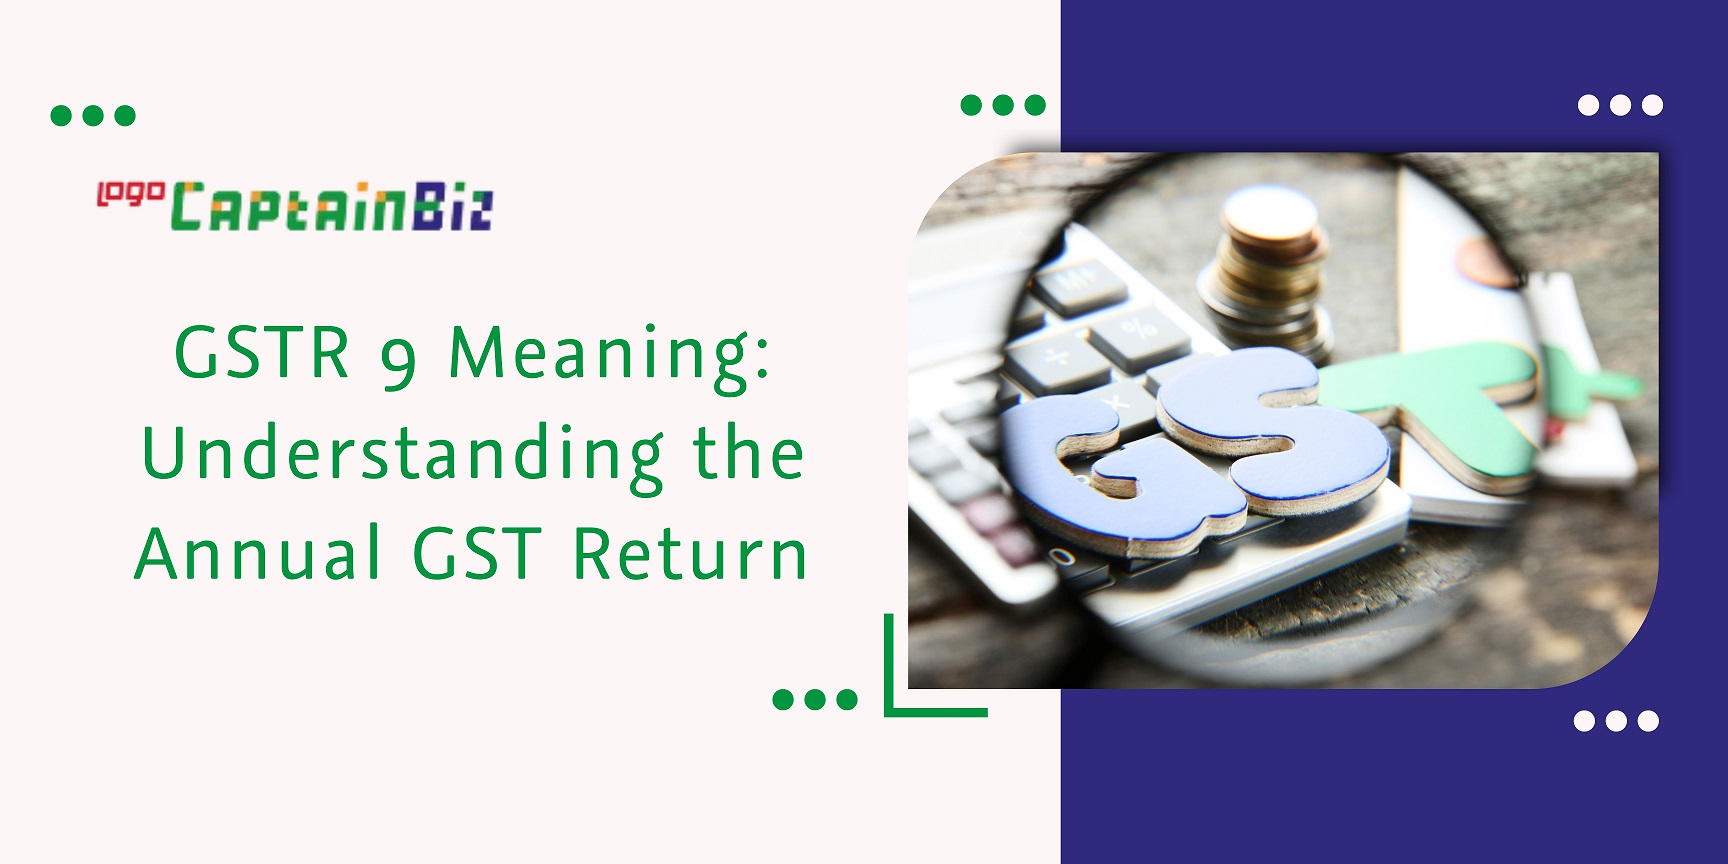 CaptainBiz: gstr 9 meaning understanding the annual gst return